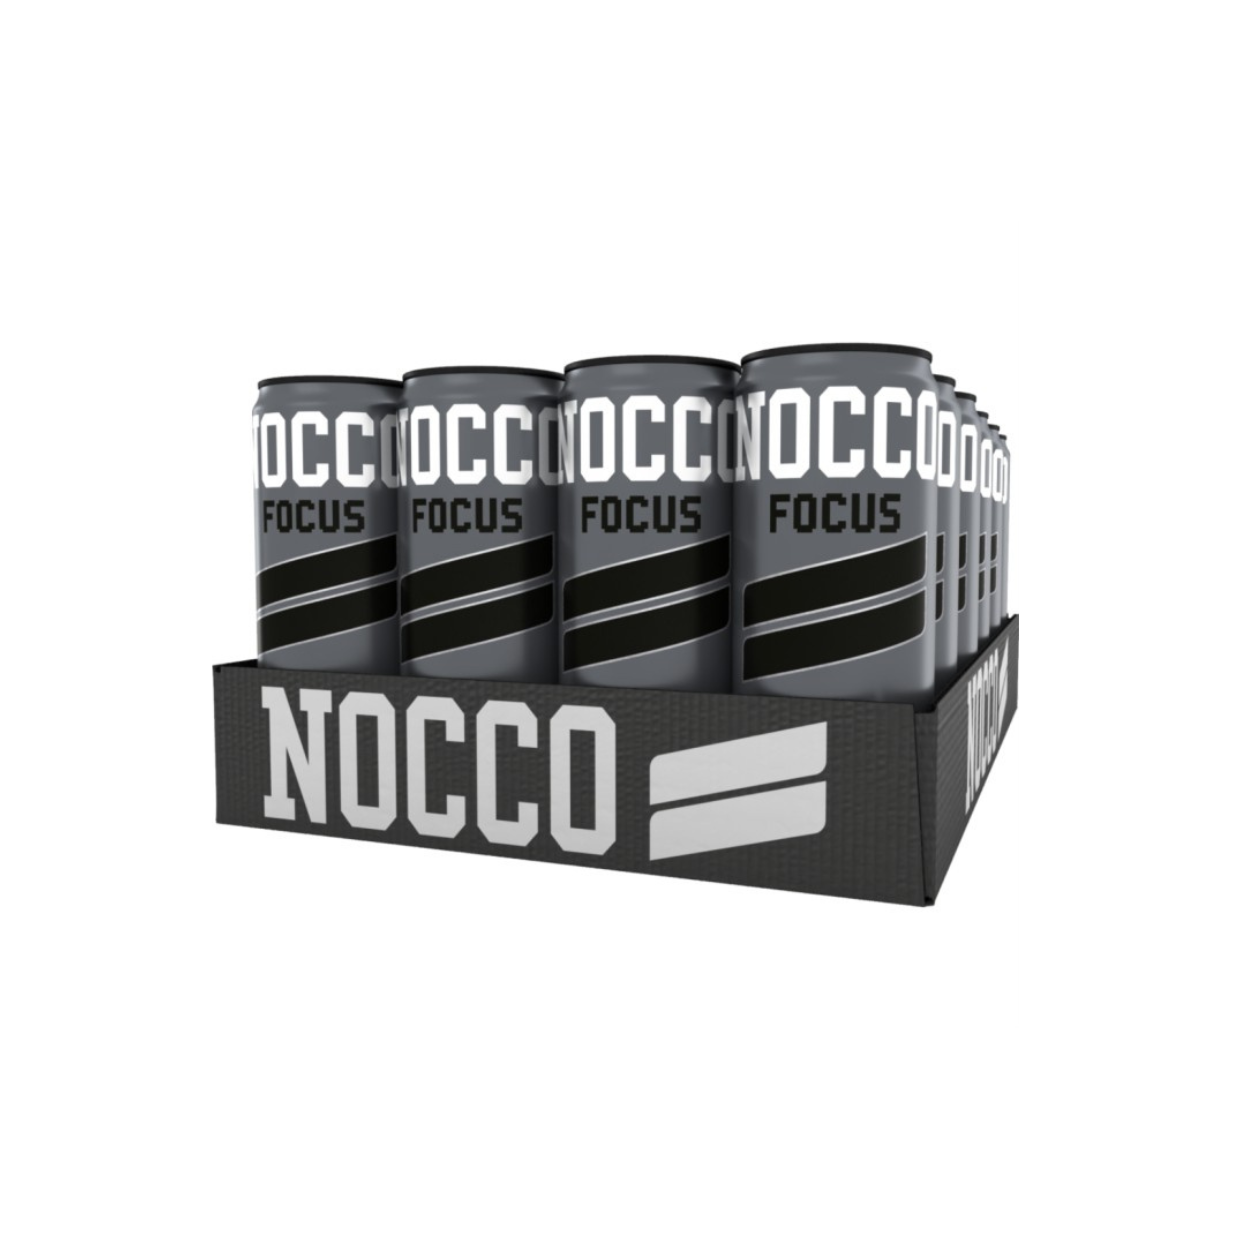 Nocco Focus Ramonade Dose (1-24x330ml)